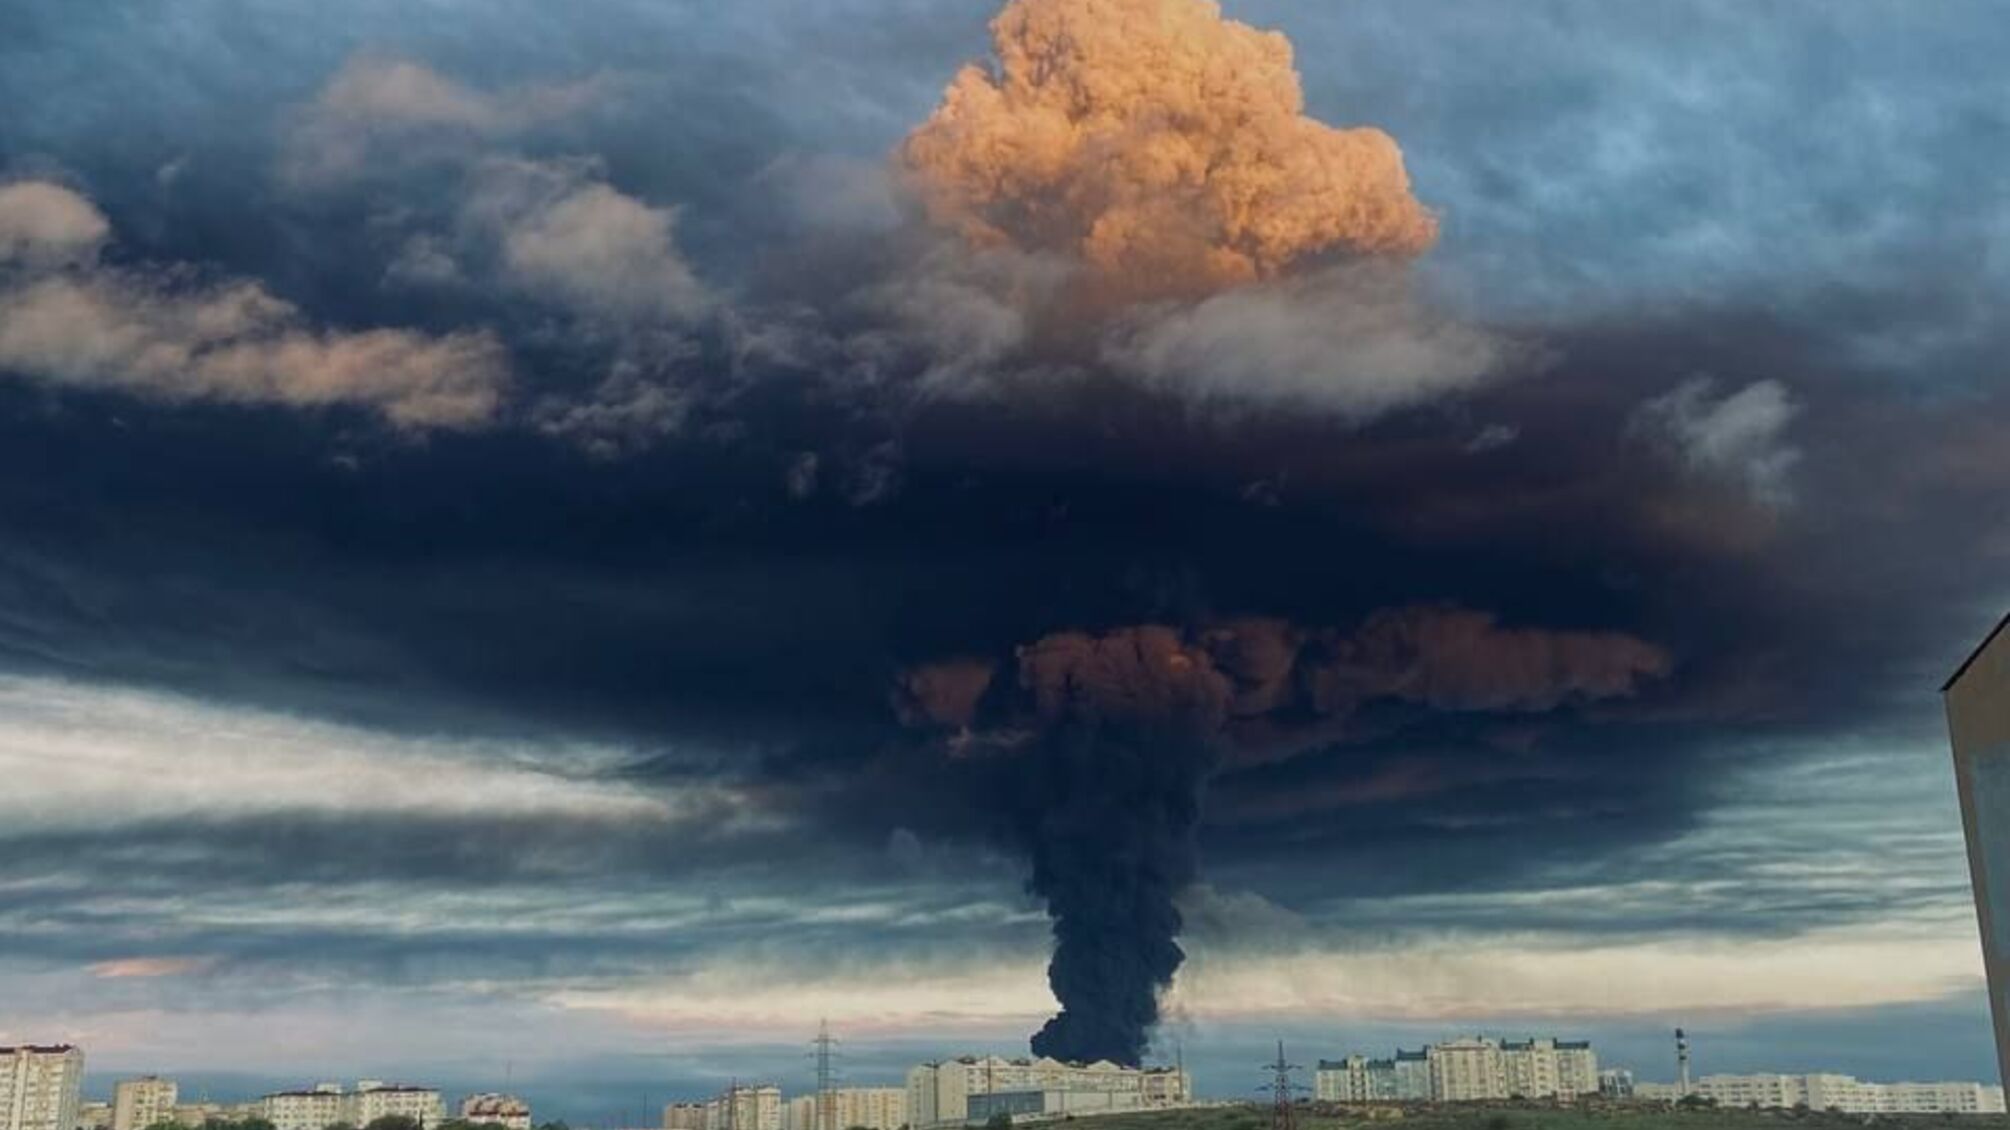 Взрывы в Крыму: в Севастополе горит нефтебаза, площадь возгорания более 1000 кв. м (видео)